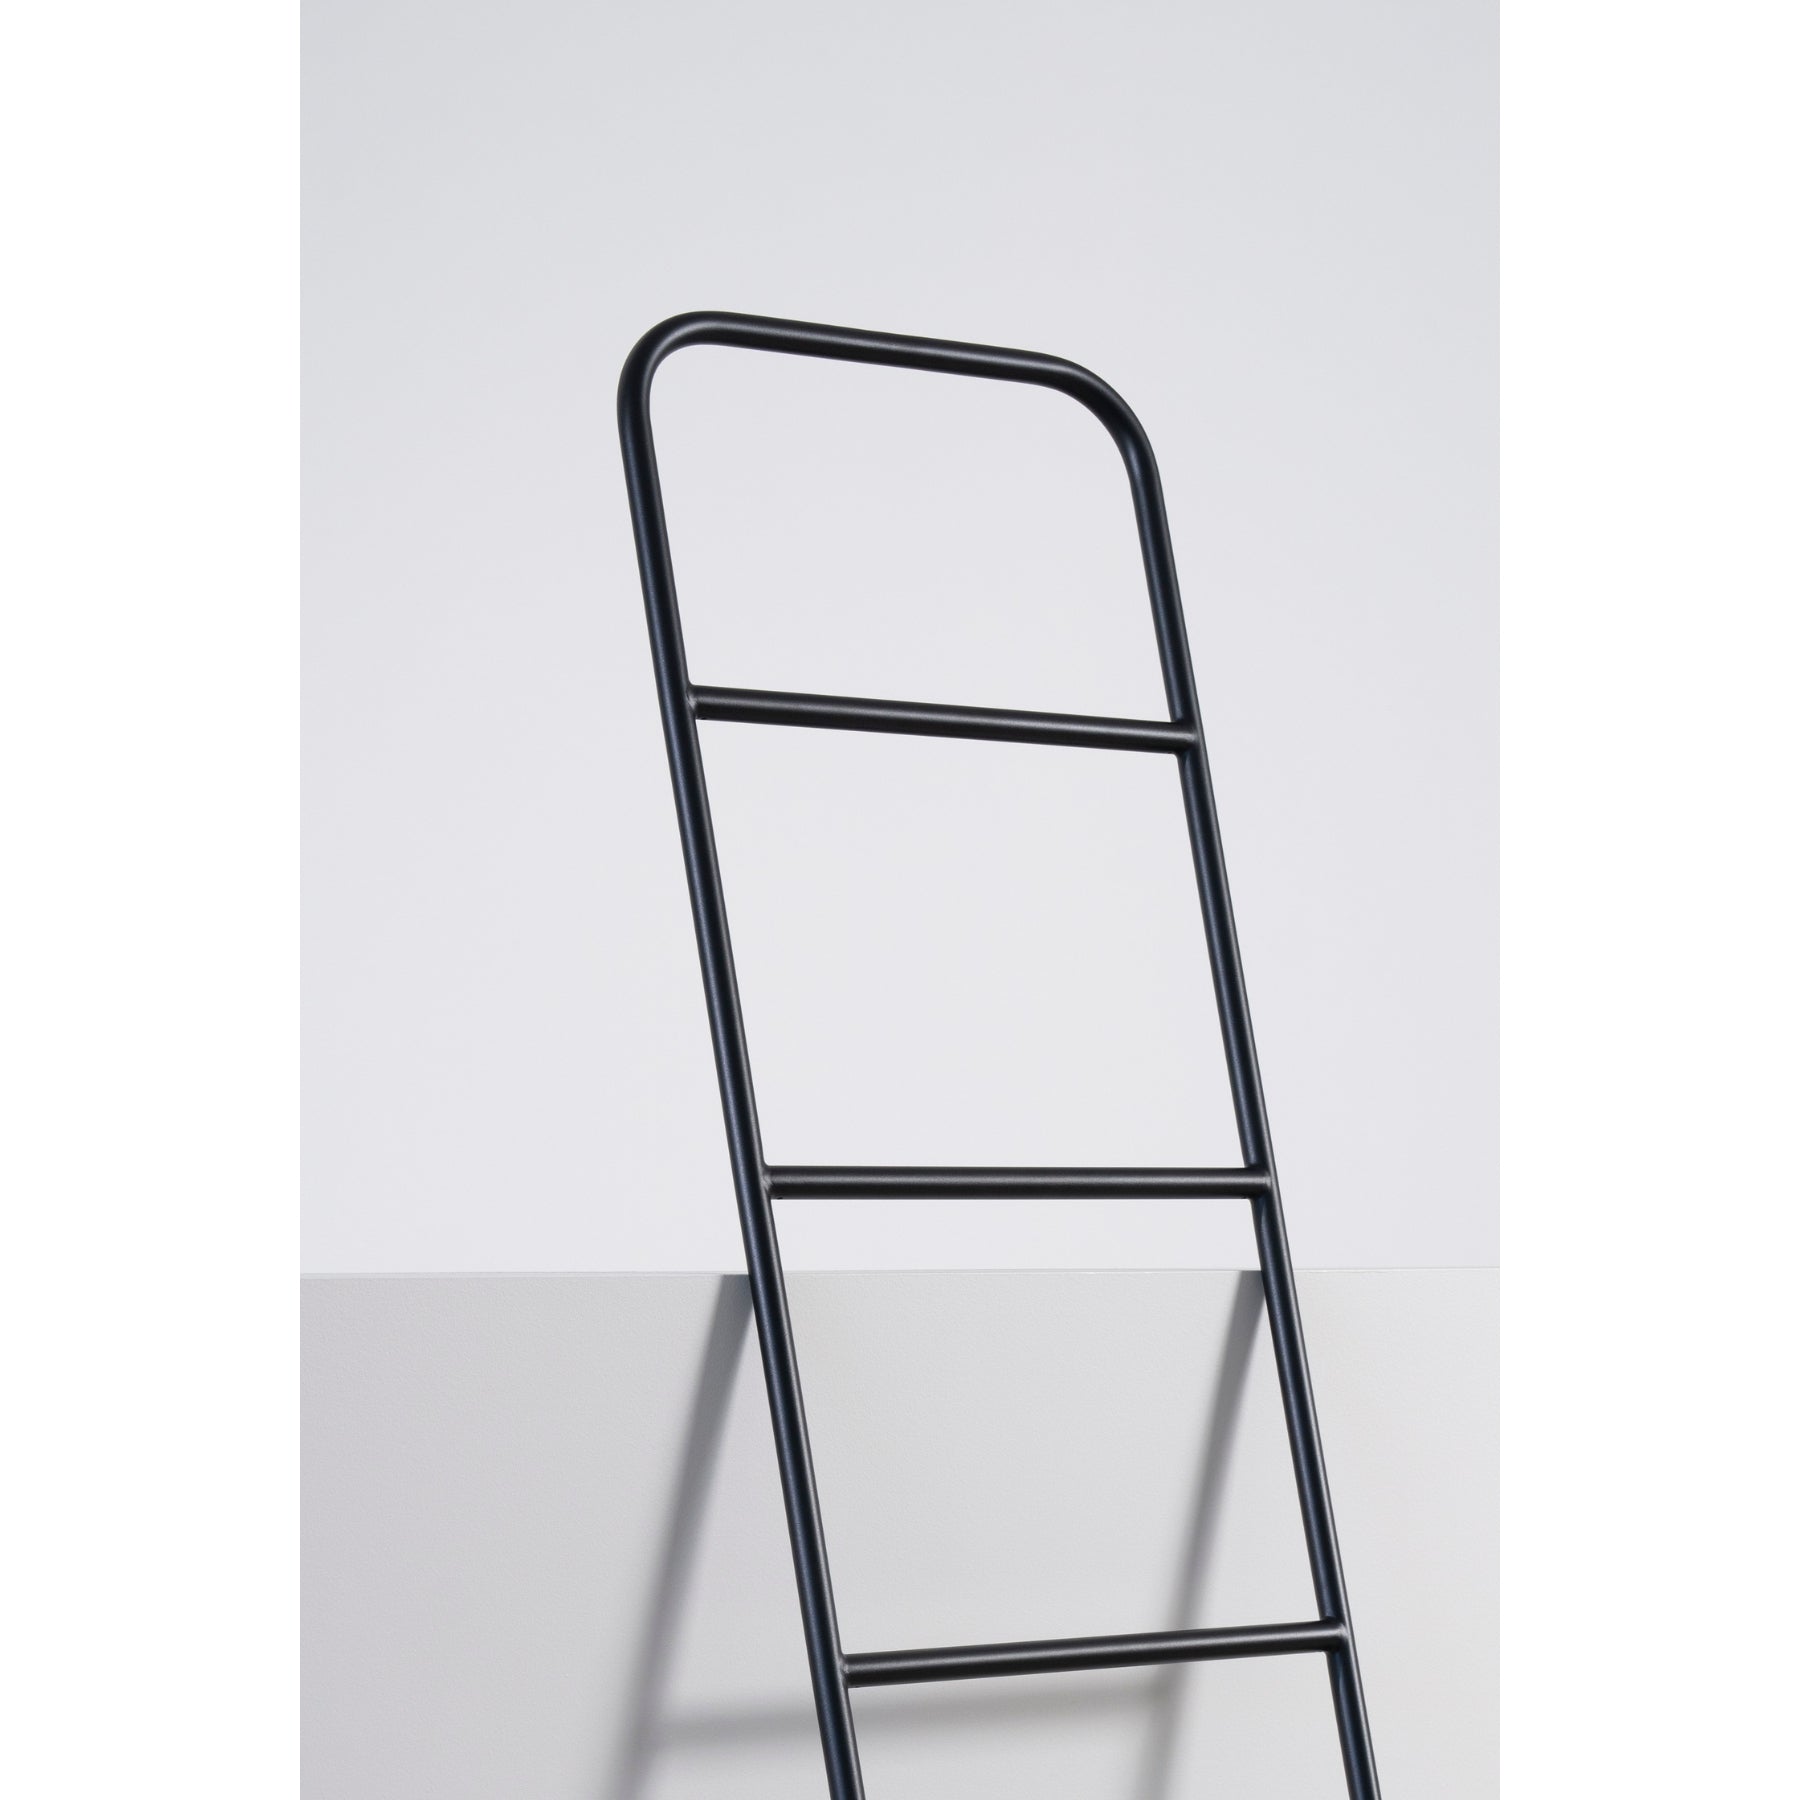 Scala Storage Ladder | Black